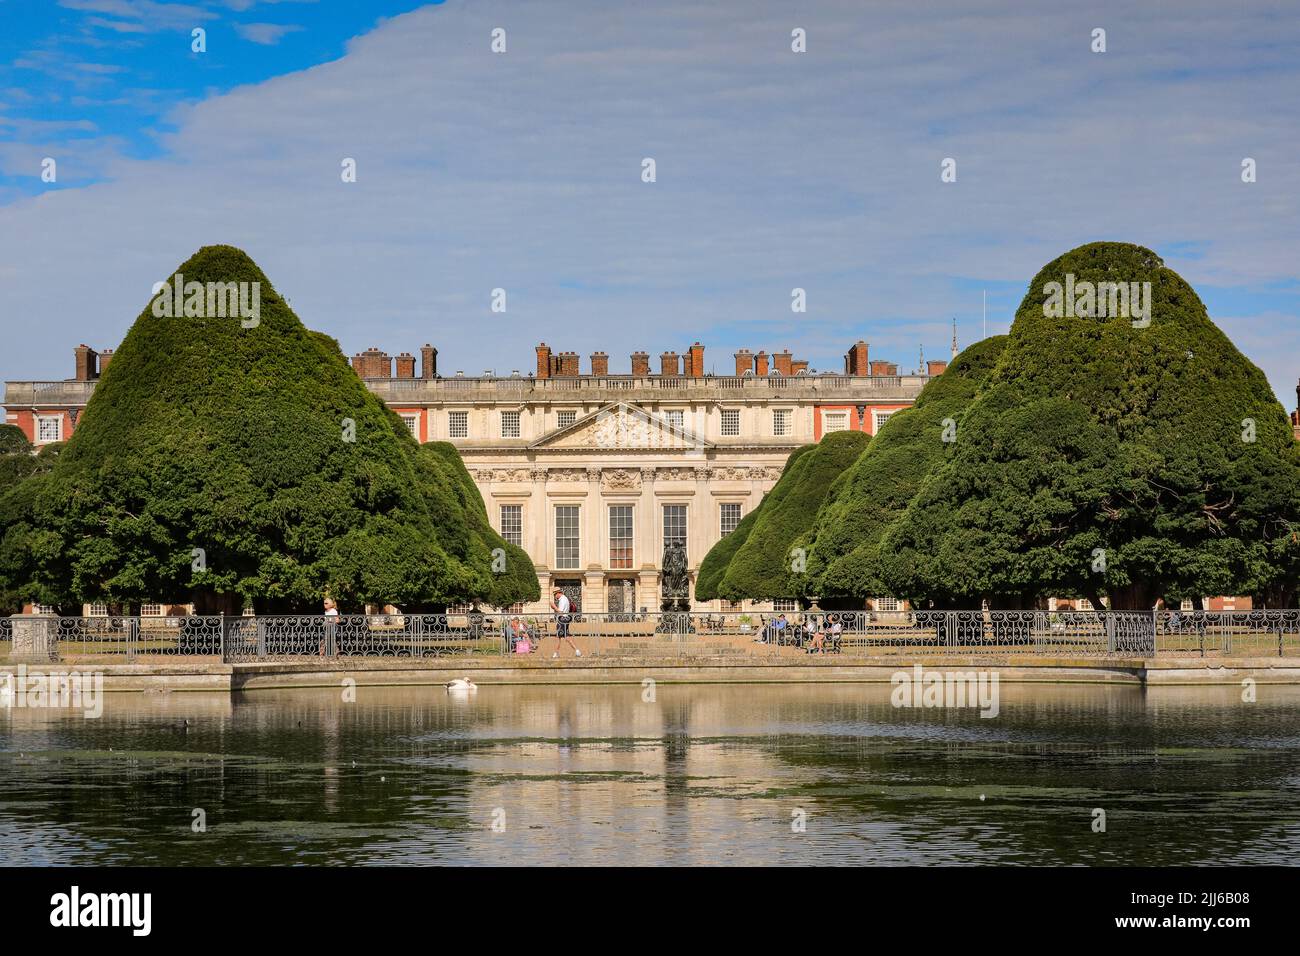 Lake view of Hampton Court Palace, Richmond, UK Stock Photo